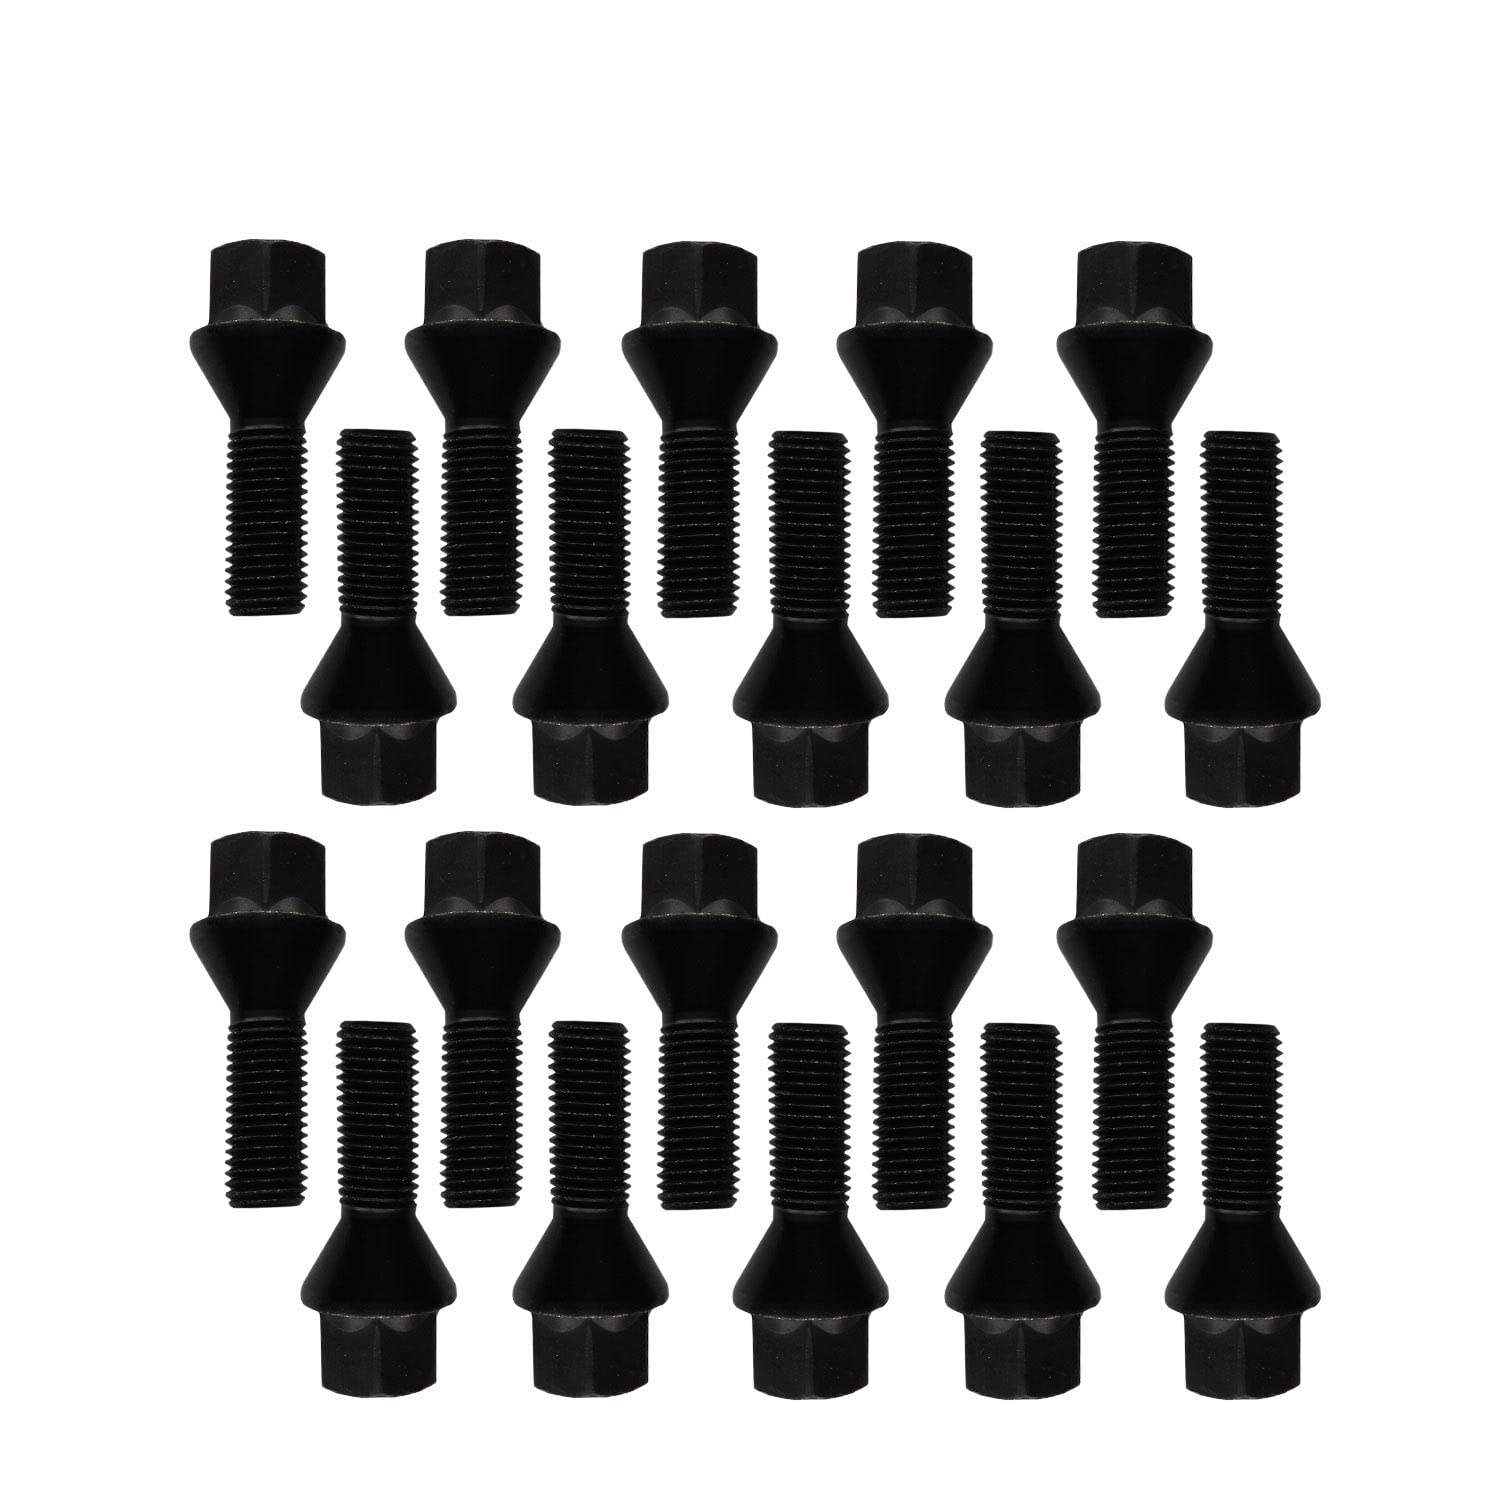 20 Radschrauben Radbolzen schwarz Kegelbund M14x1,5 43mm von TRACER